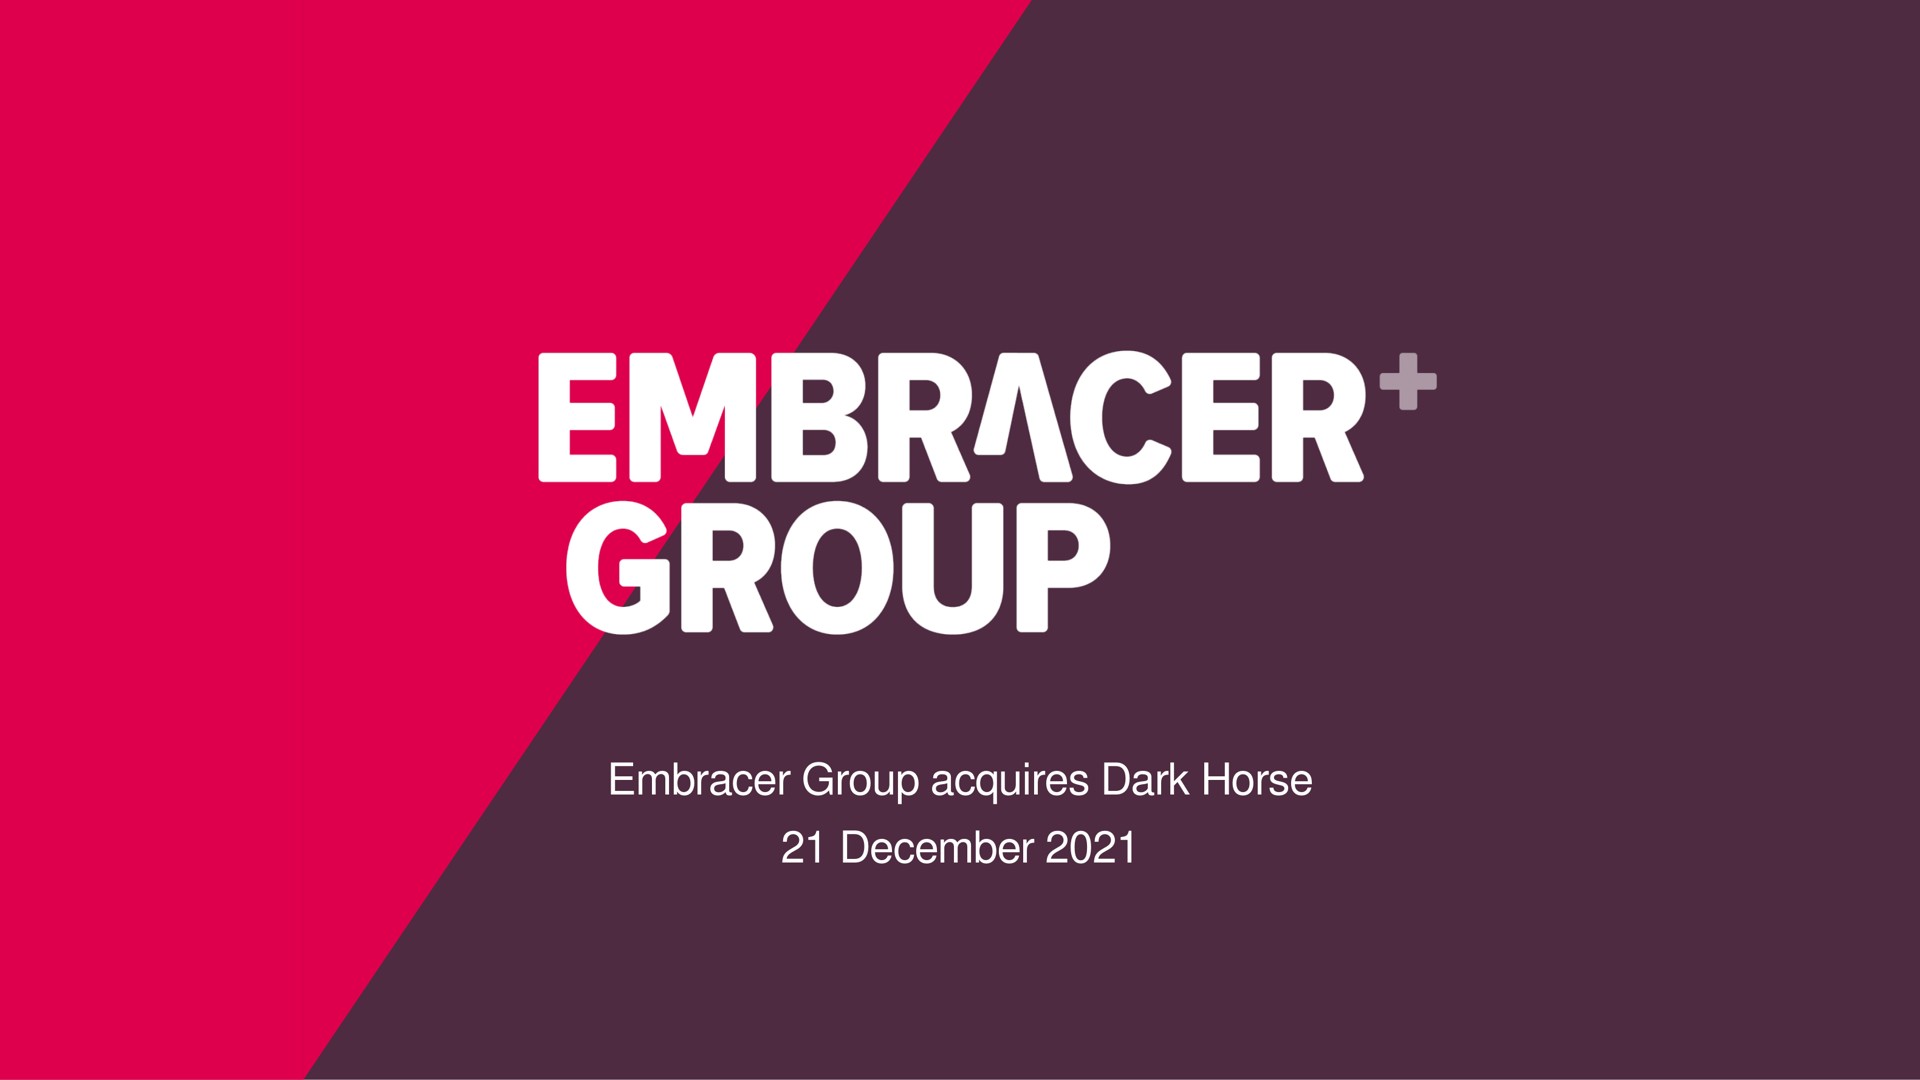 embracer group | Embracer Group